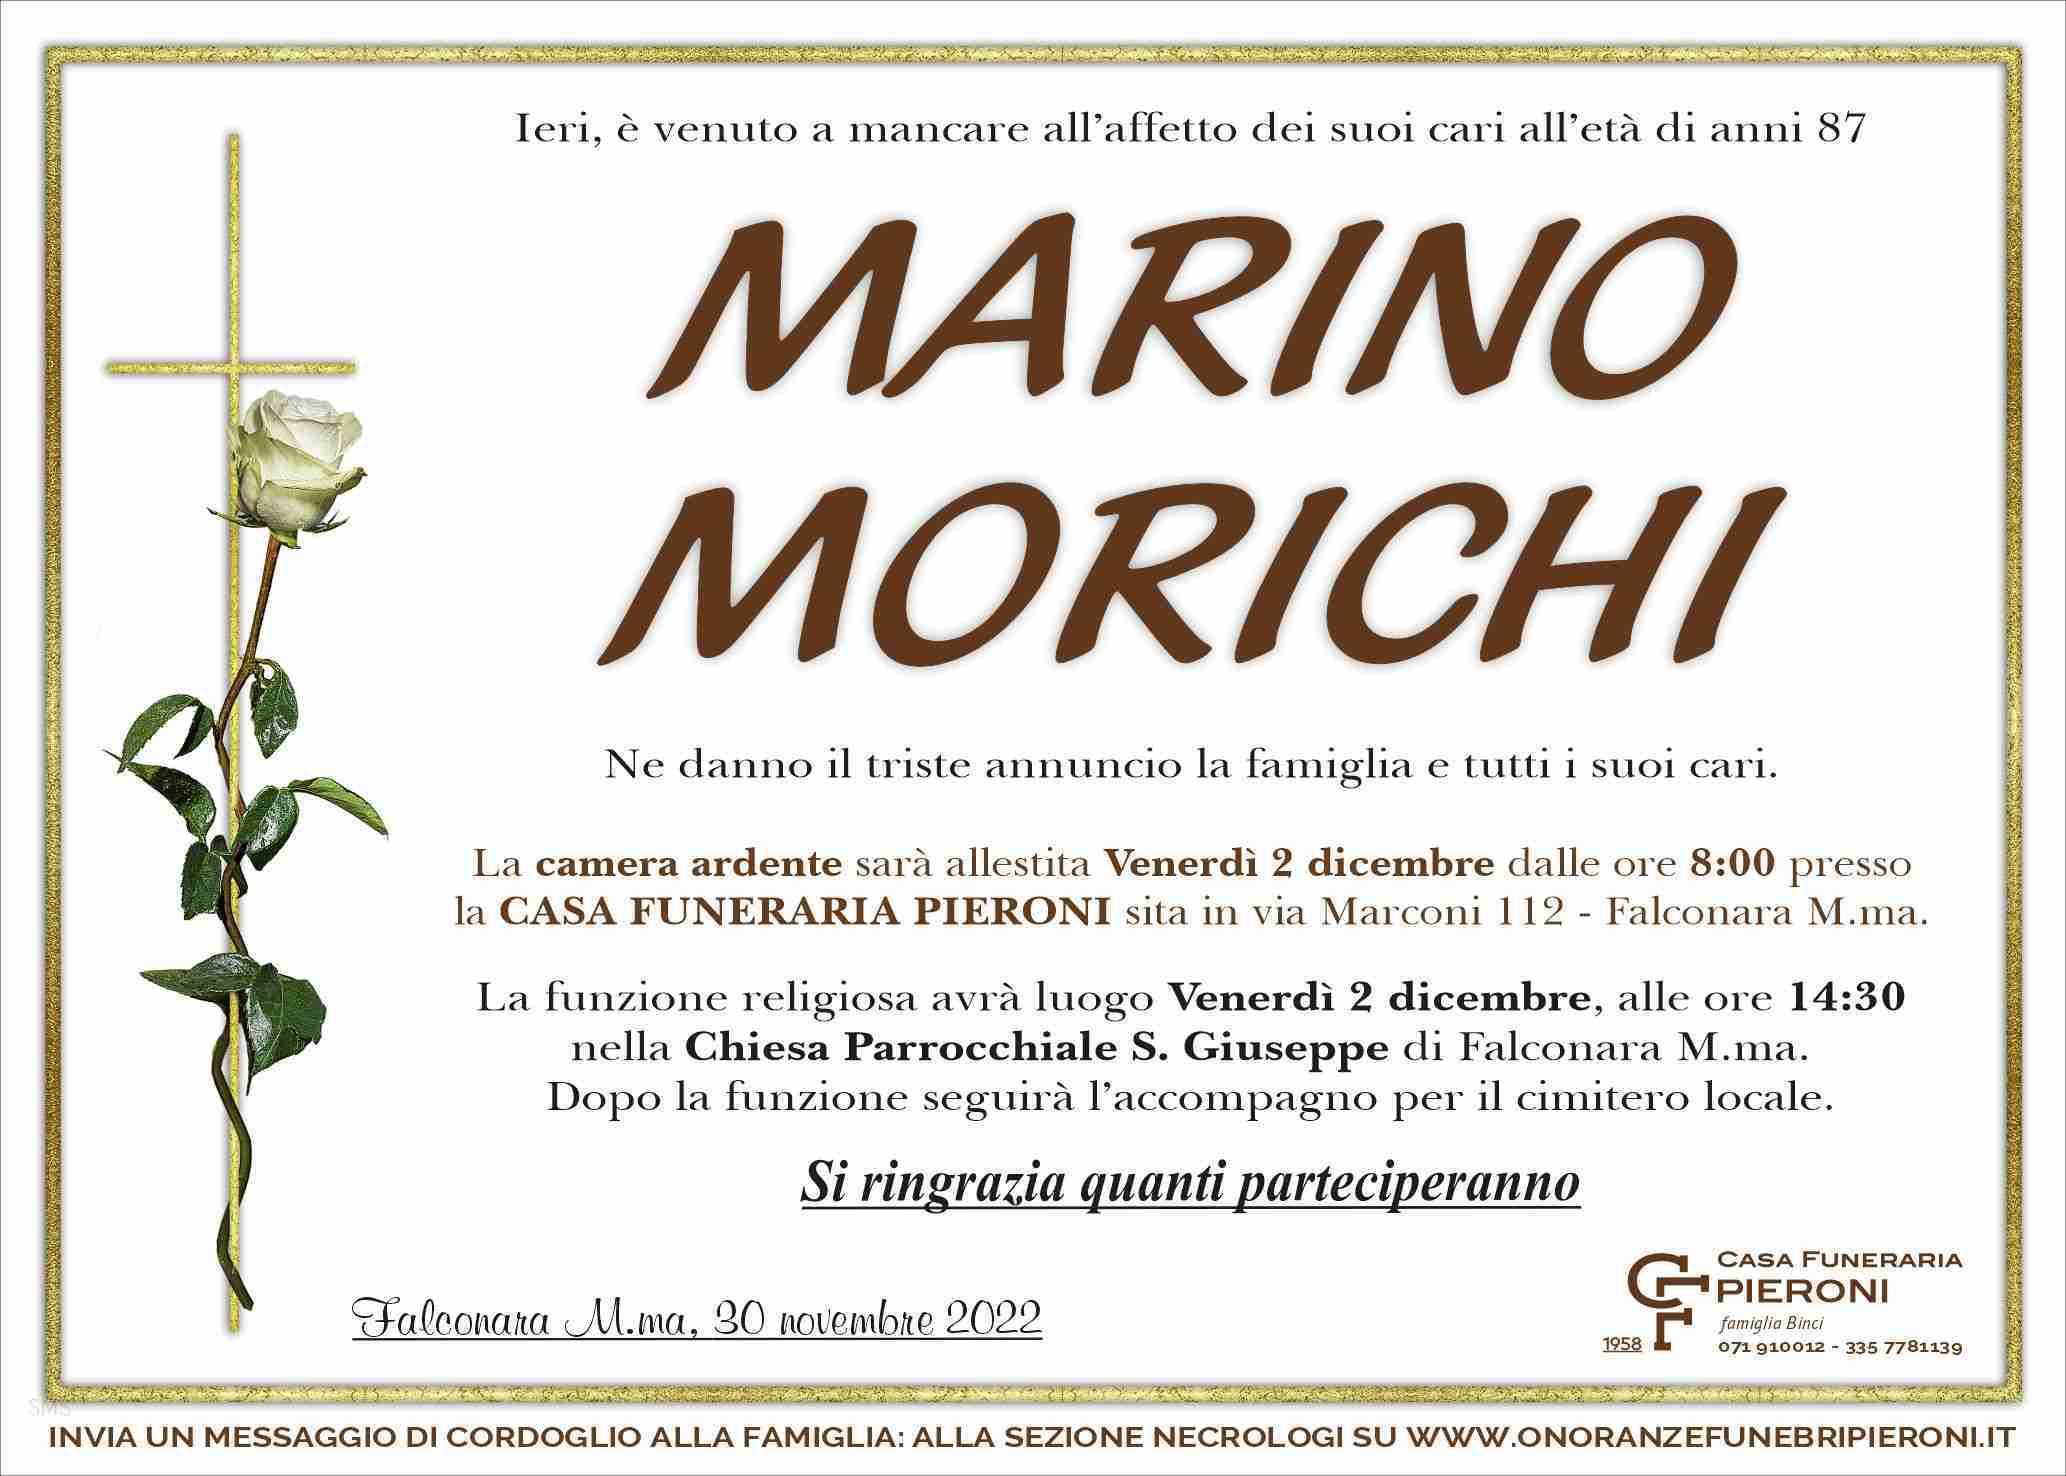 Marino Morichi